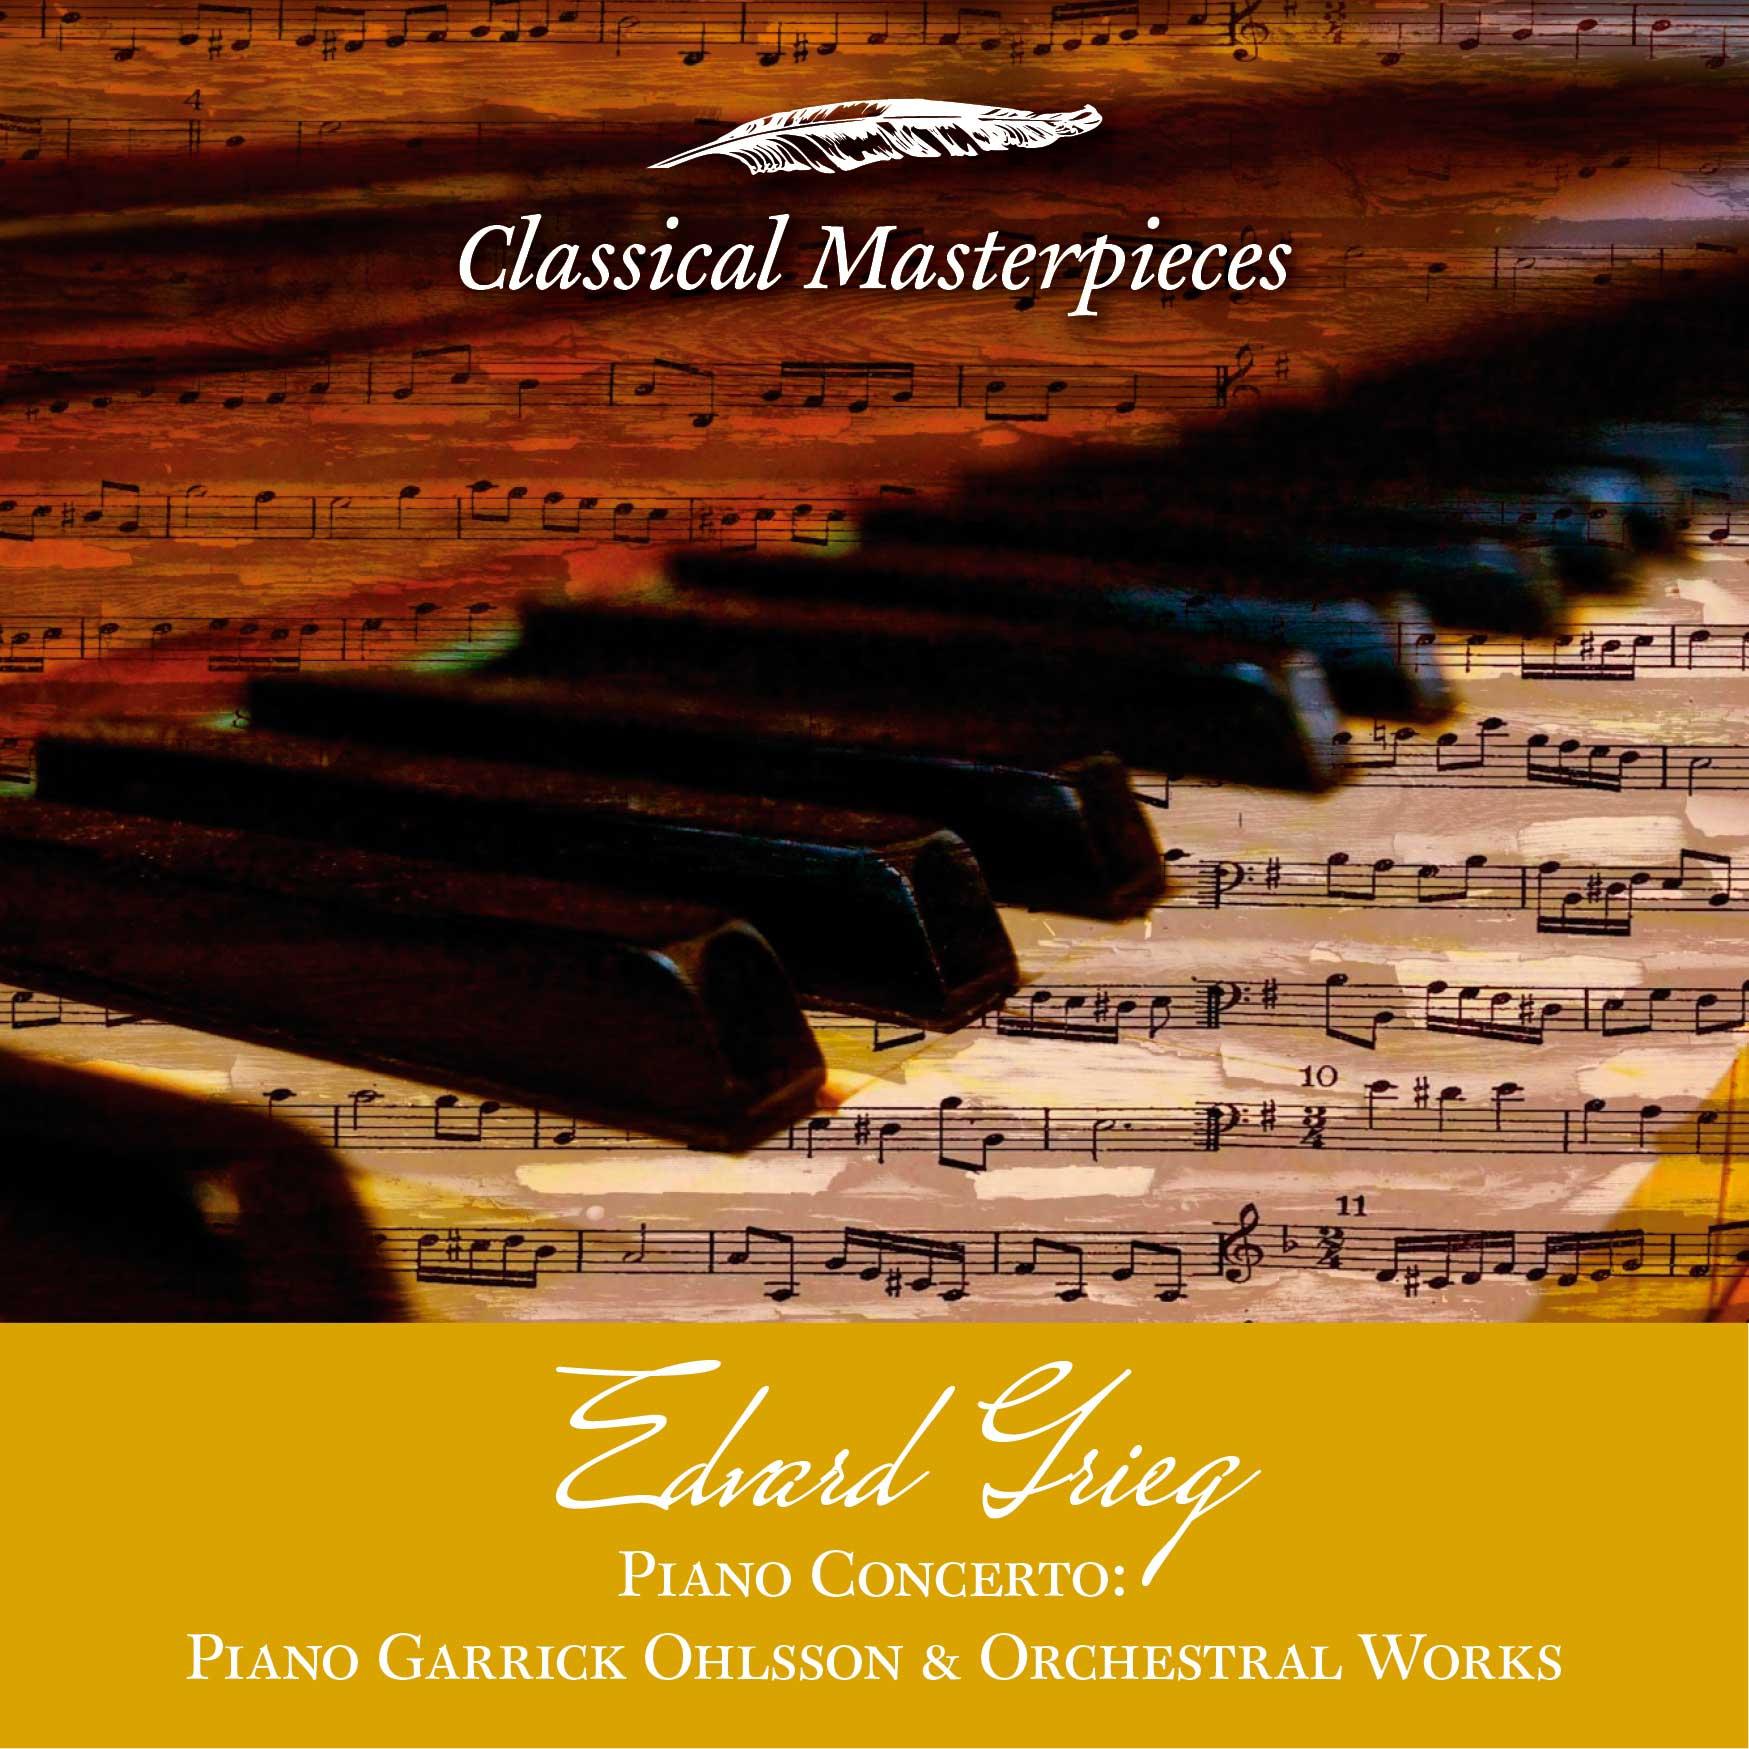 Piano Concerto A Minor op. 16 Allegro moderato e marcato Quasi presto-Andante maestoso